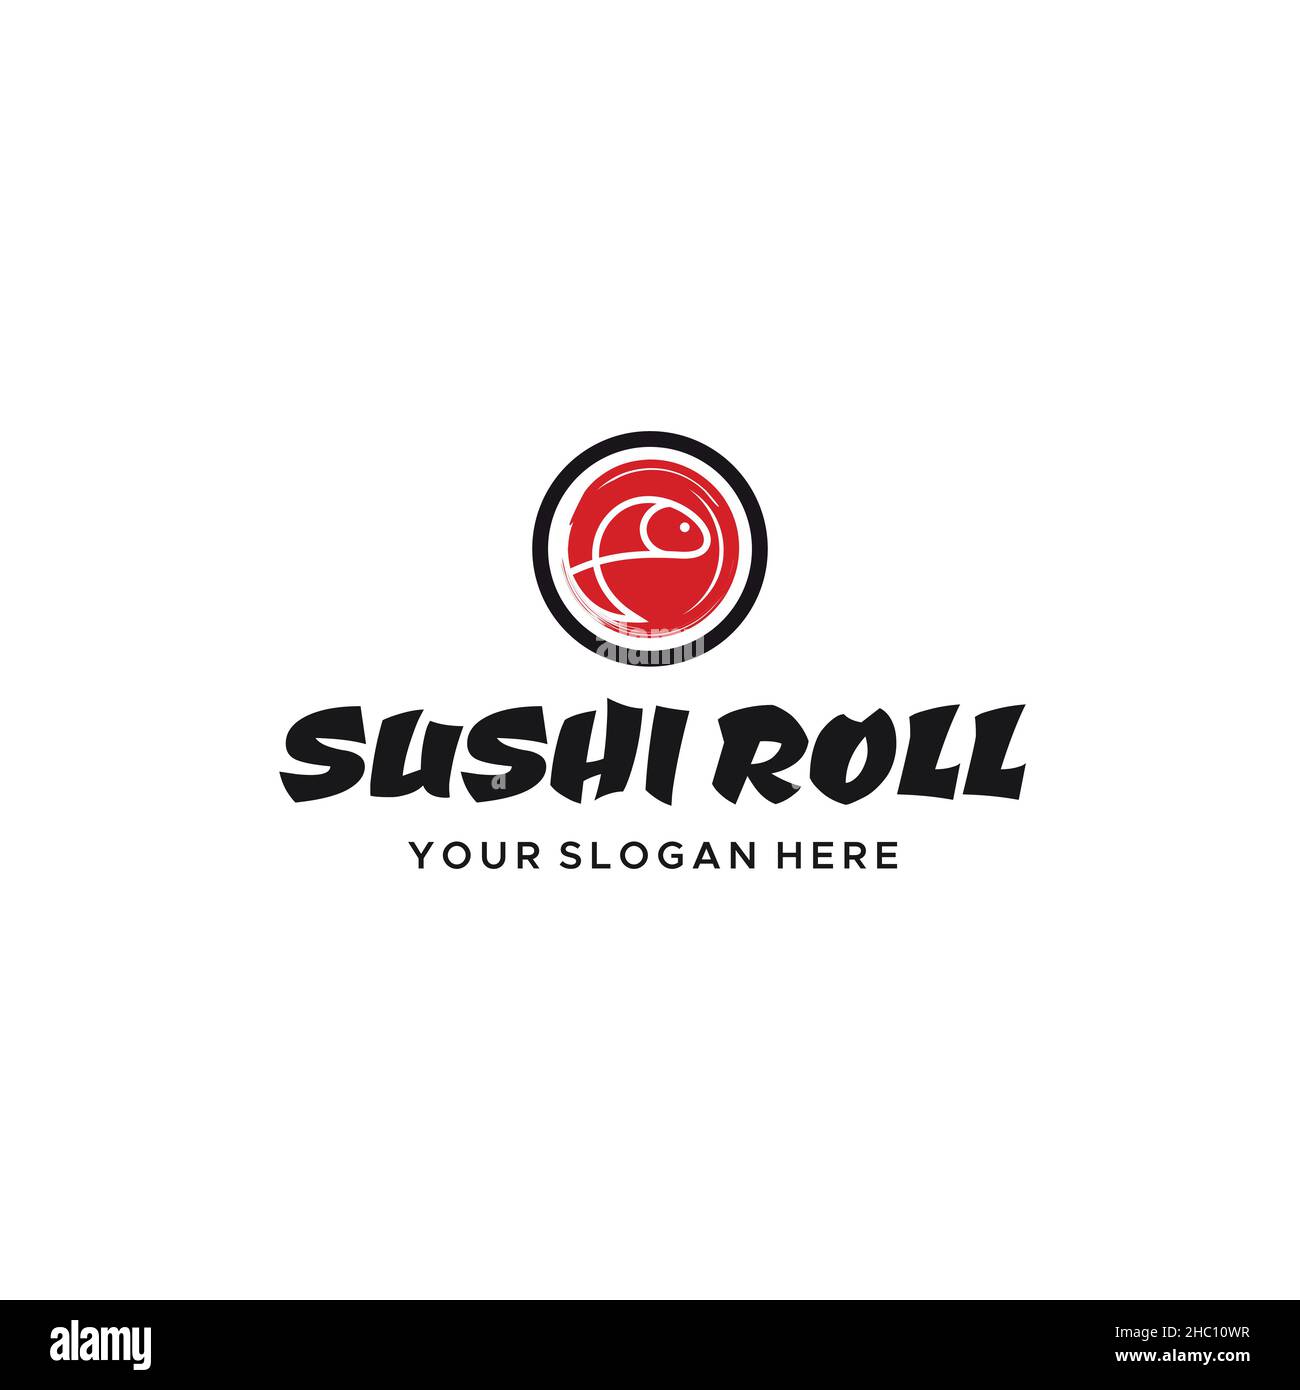 Motif moderne plat coloré EN FORME DE ROULEAU DE SUSHI représentant un logo en forme de viande Illustration de Vecteur